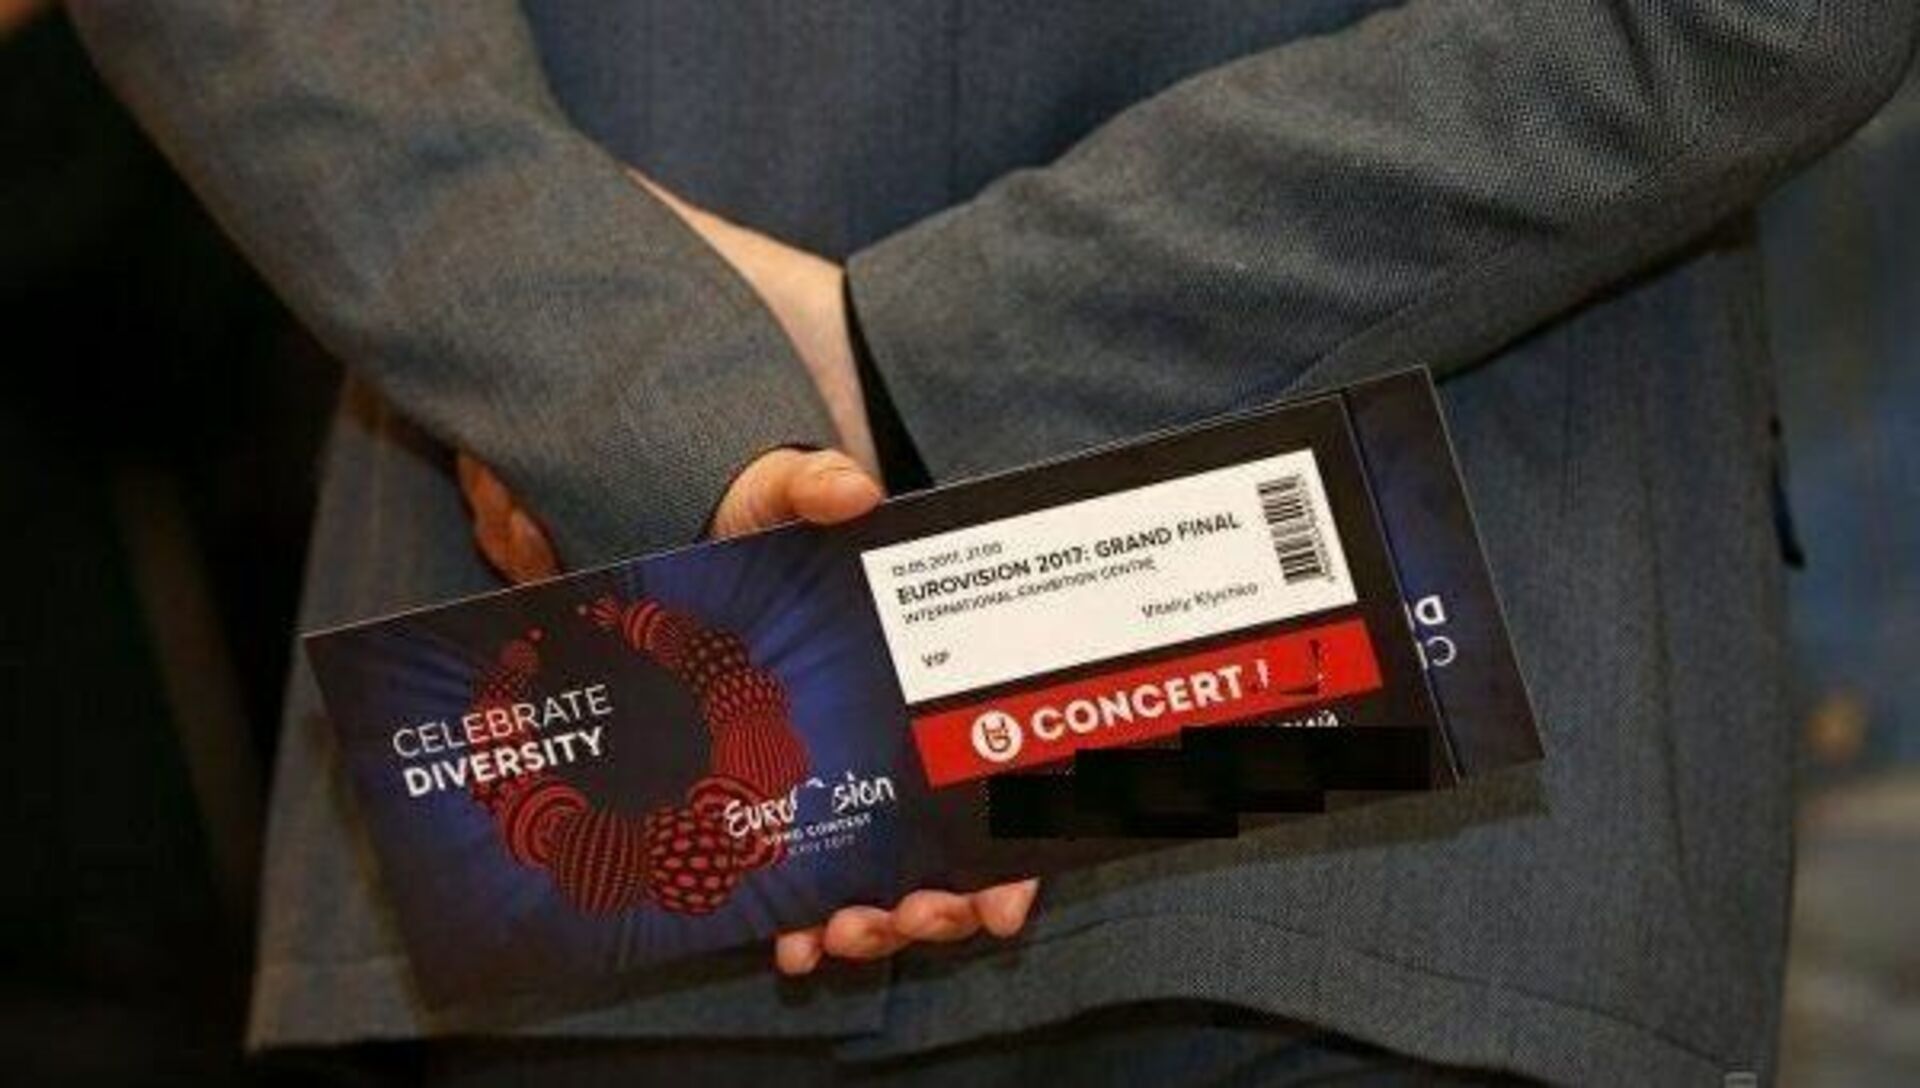 Трофимов билет на концерт